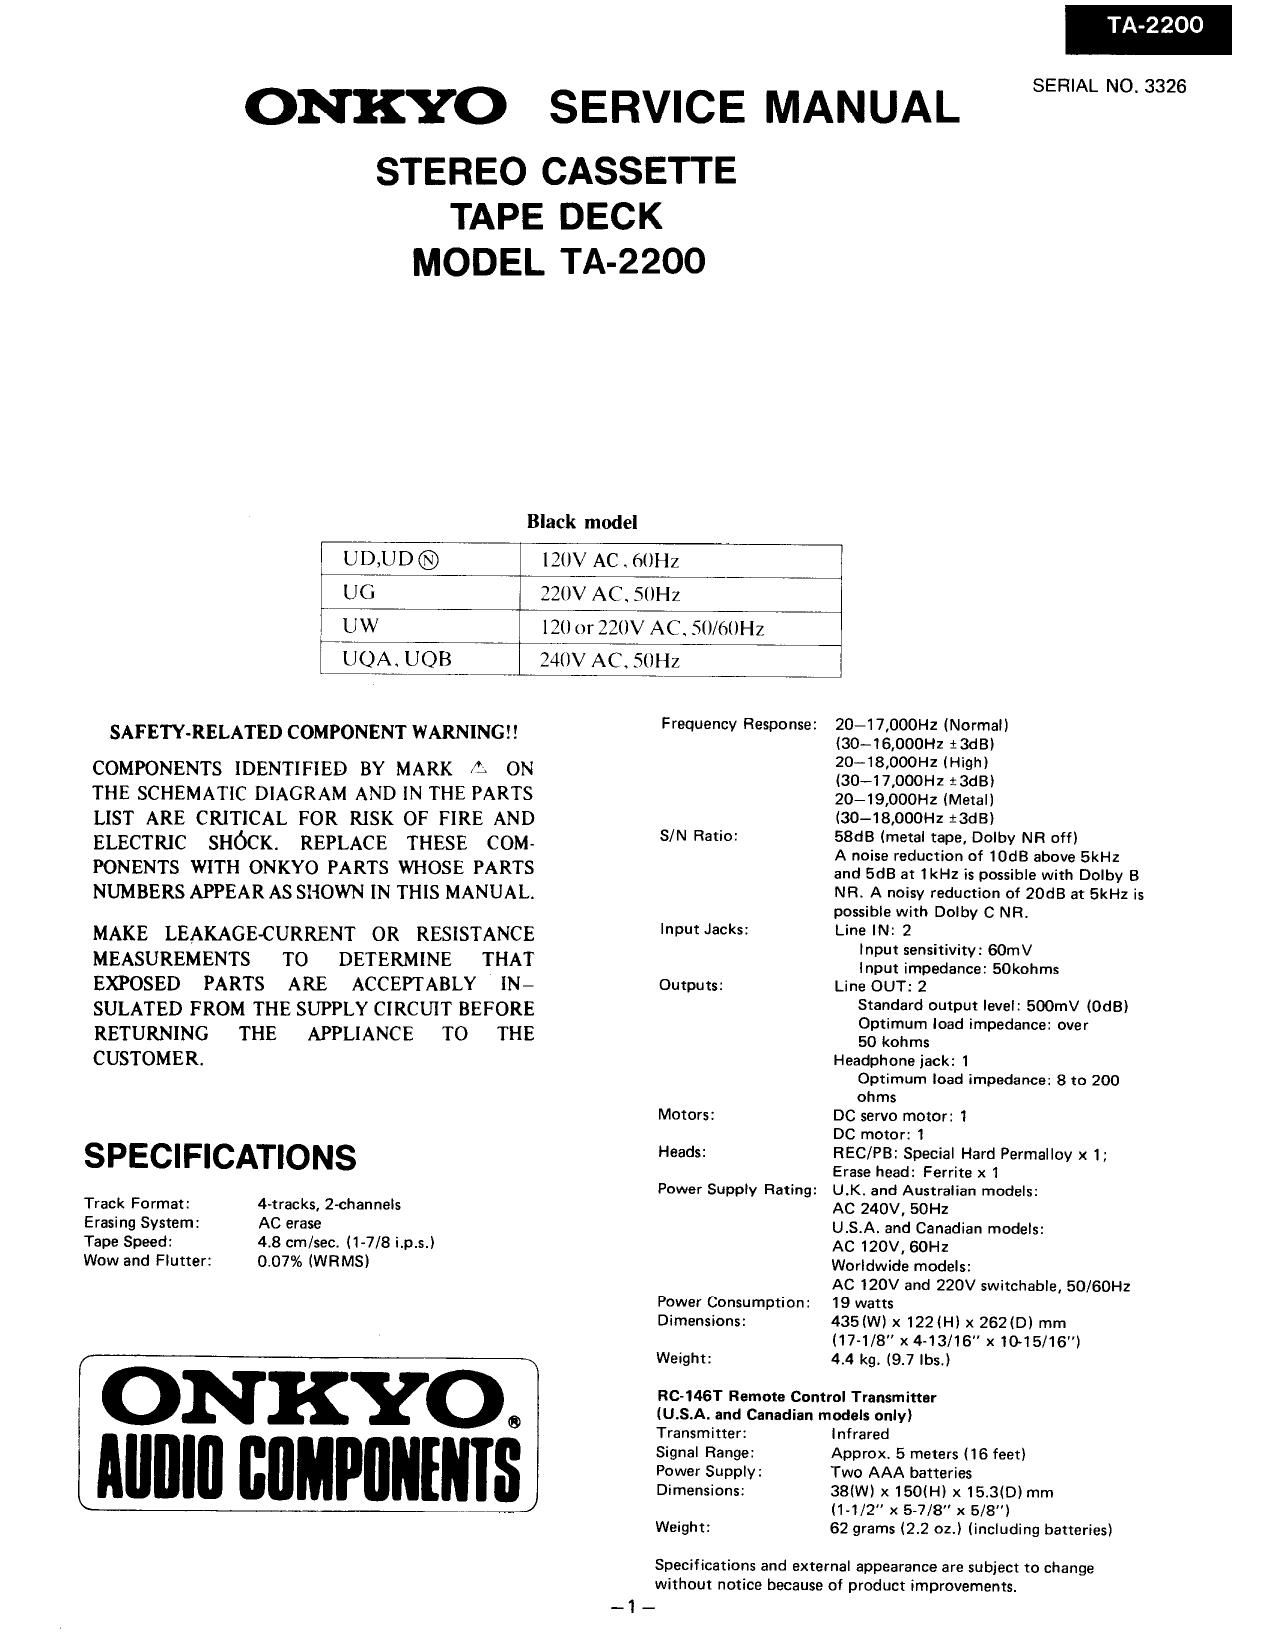 Onkyo TA 2200 Service Manual